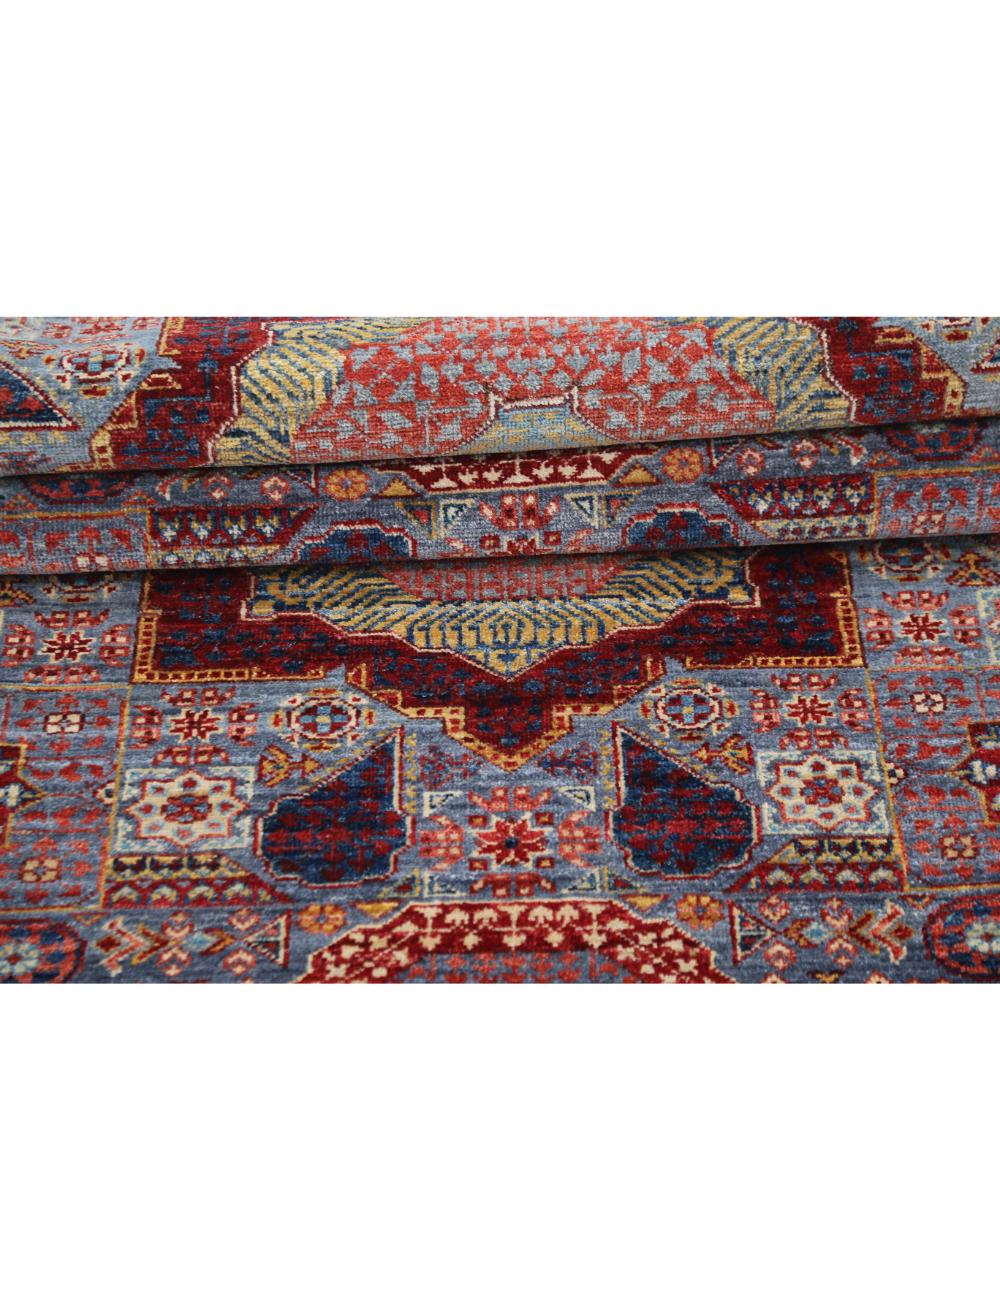 Hand Knotted Mamluk Wool Rug - 2'7'' x 14'10'' Arteverk Arteverk Rugs